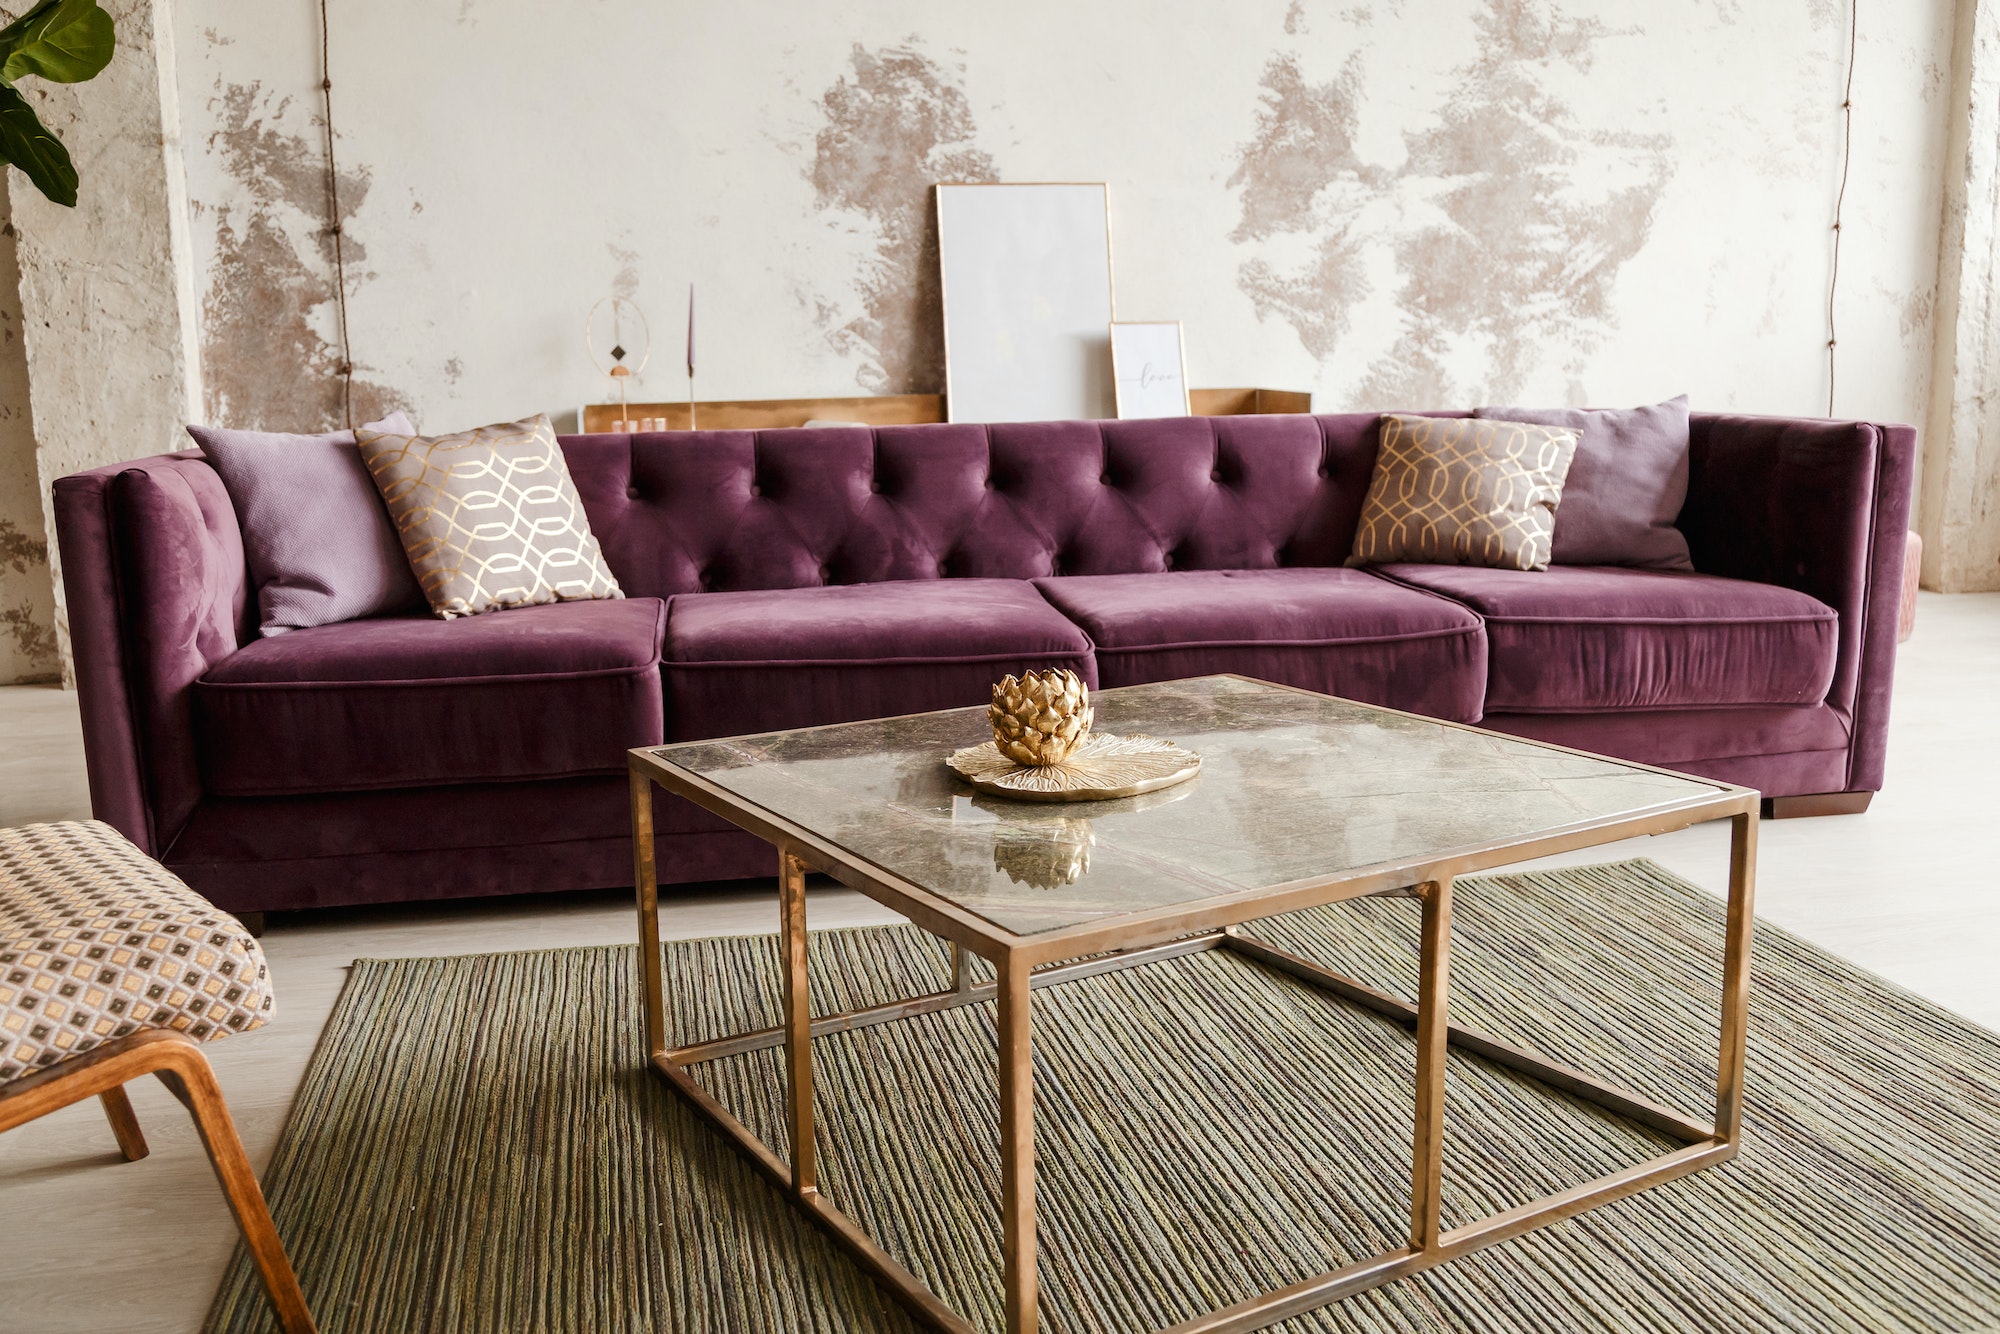 Purple velvet sofa with golden pillow in living room interior